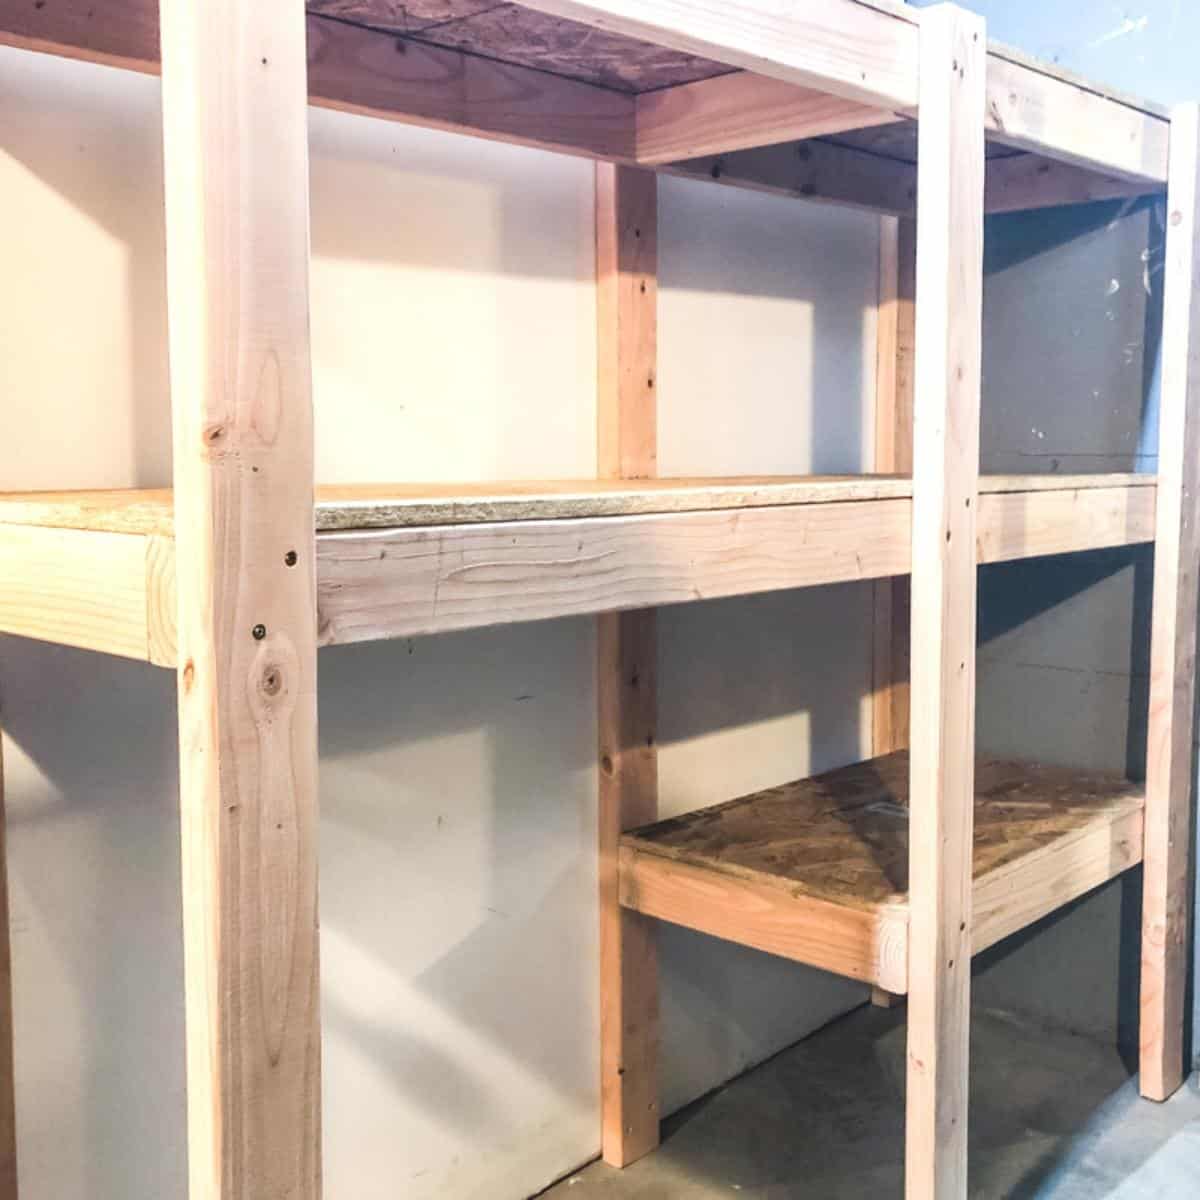 How I Built A Rising Shelf Storage For My Shop